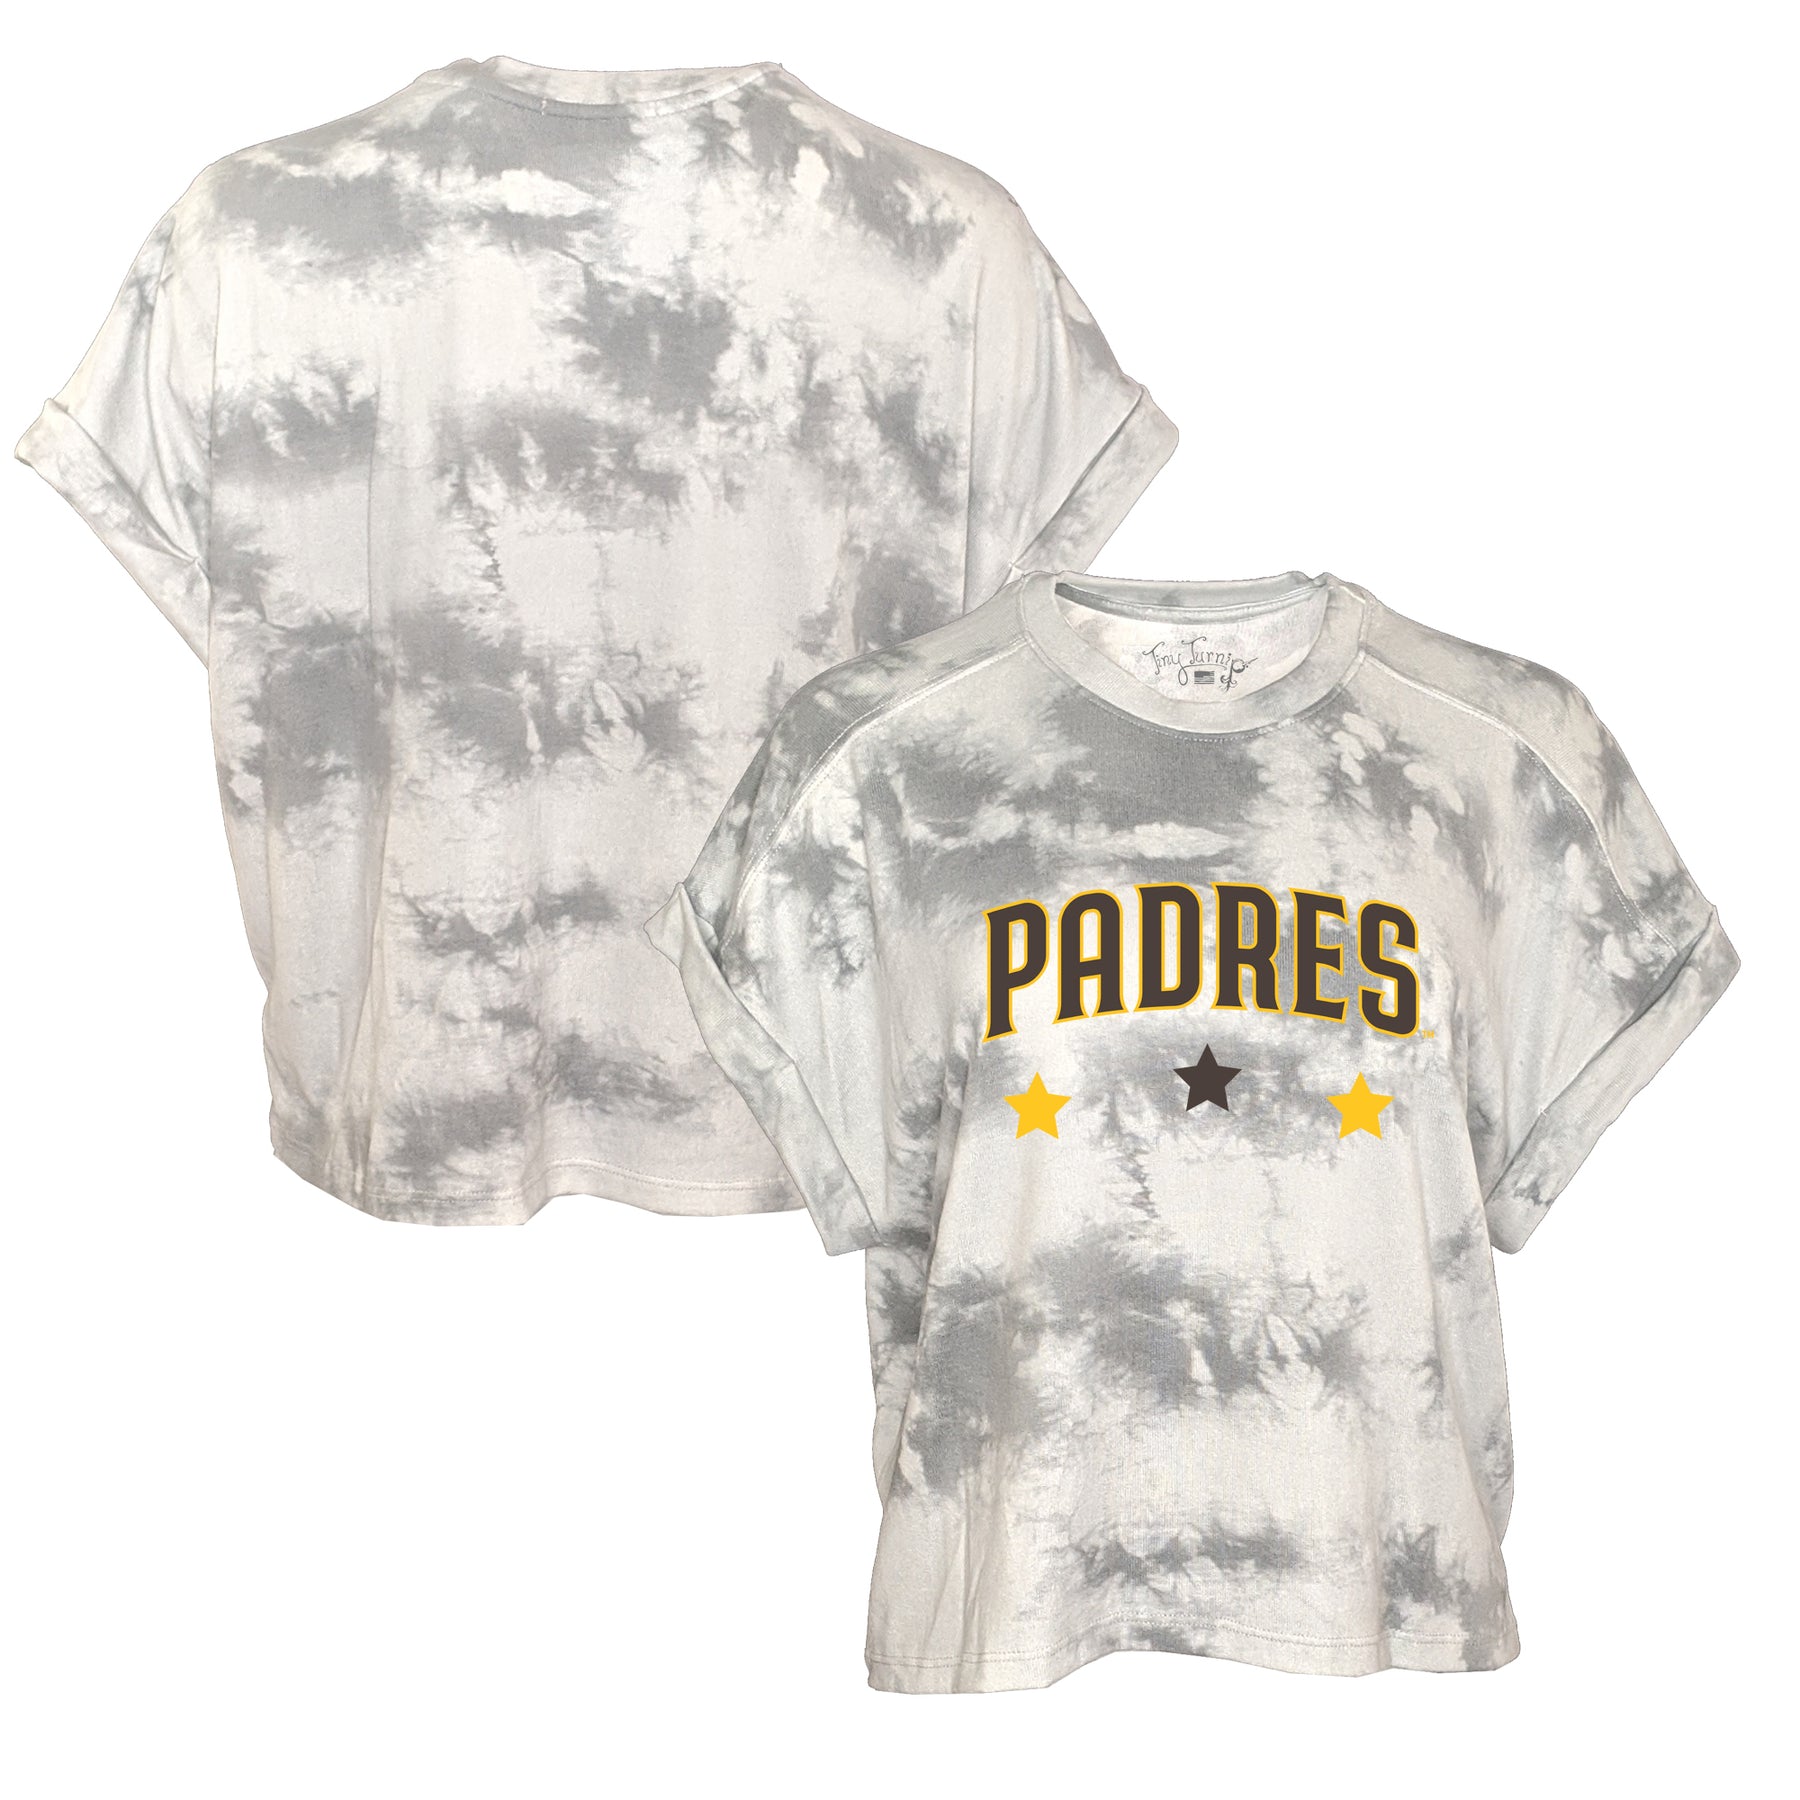 San Diego Padres Ladies Apparel, Ladies Padres Clothing, Merchandise